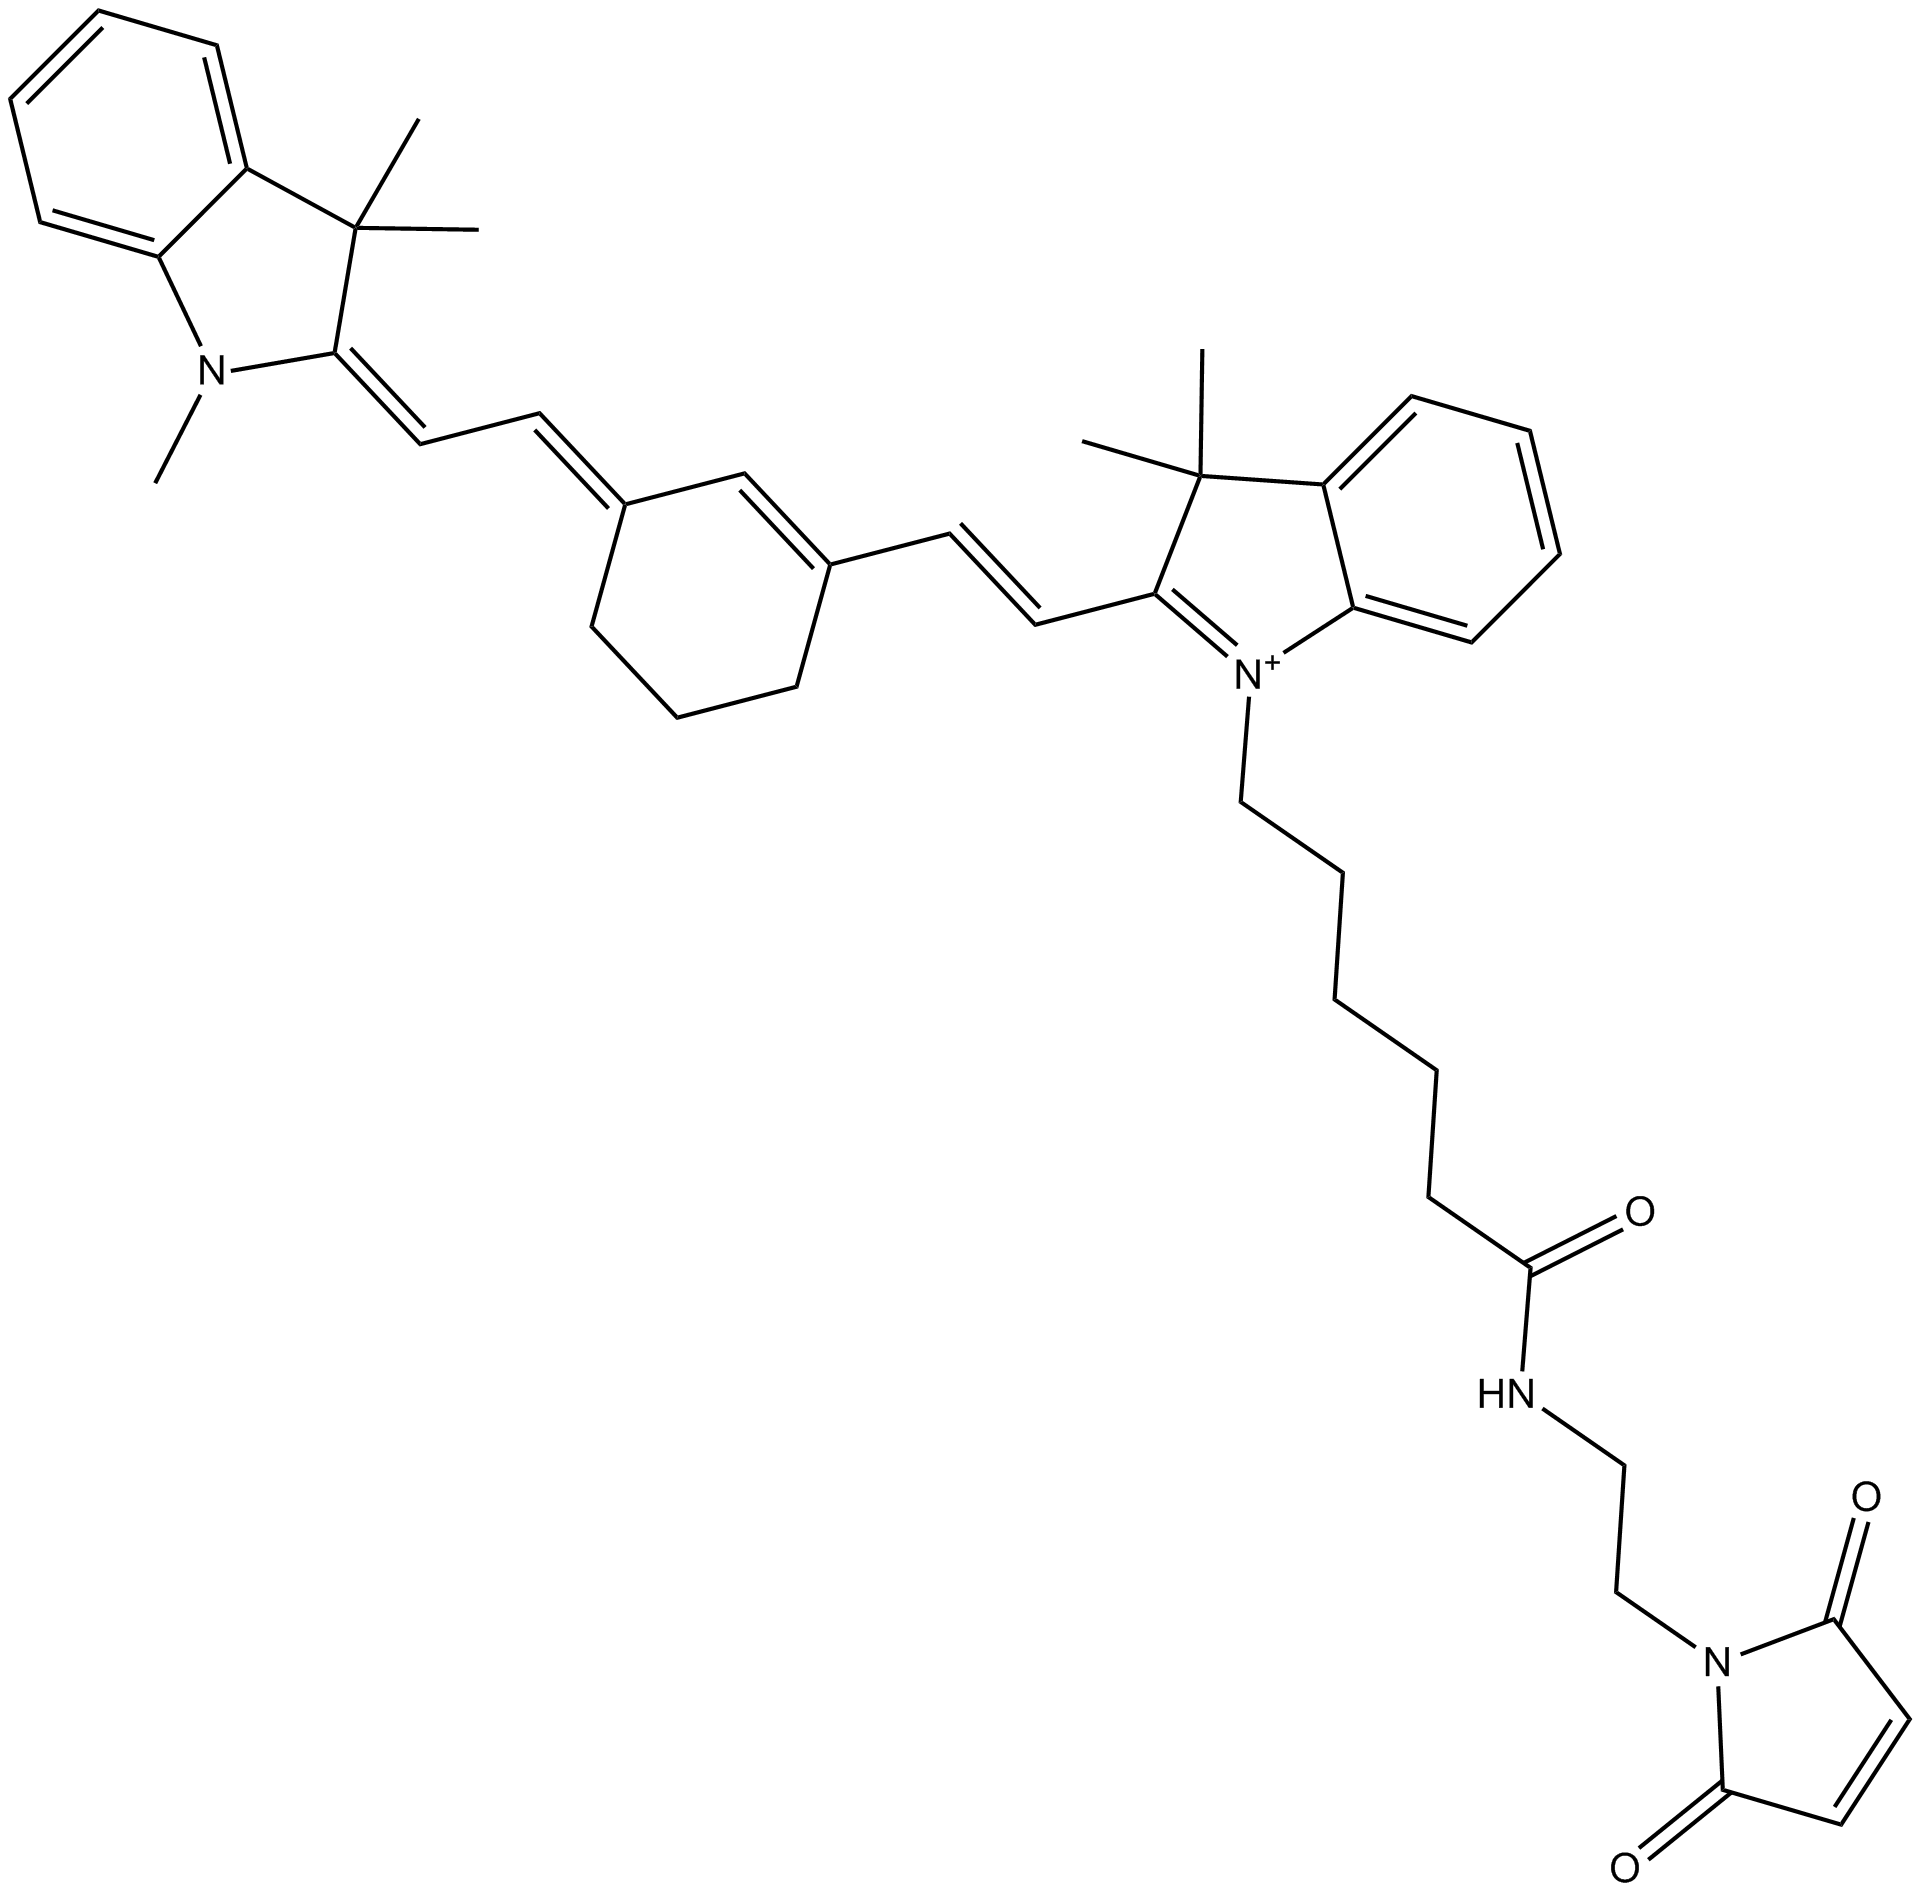 Cy7 maleimide (non-sulfonated) Chemische Struktur